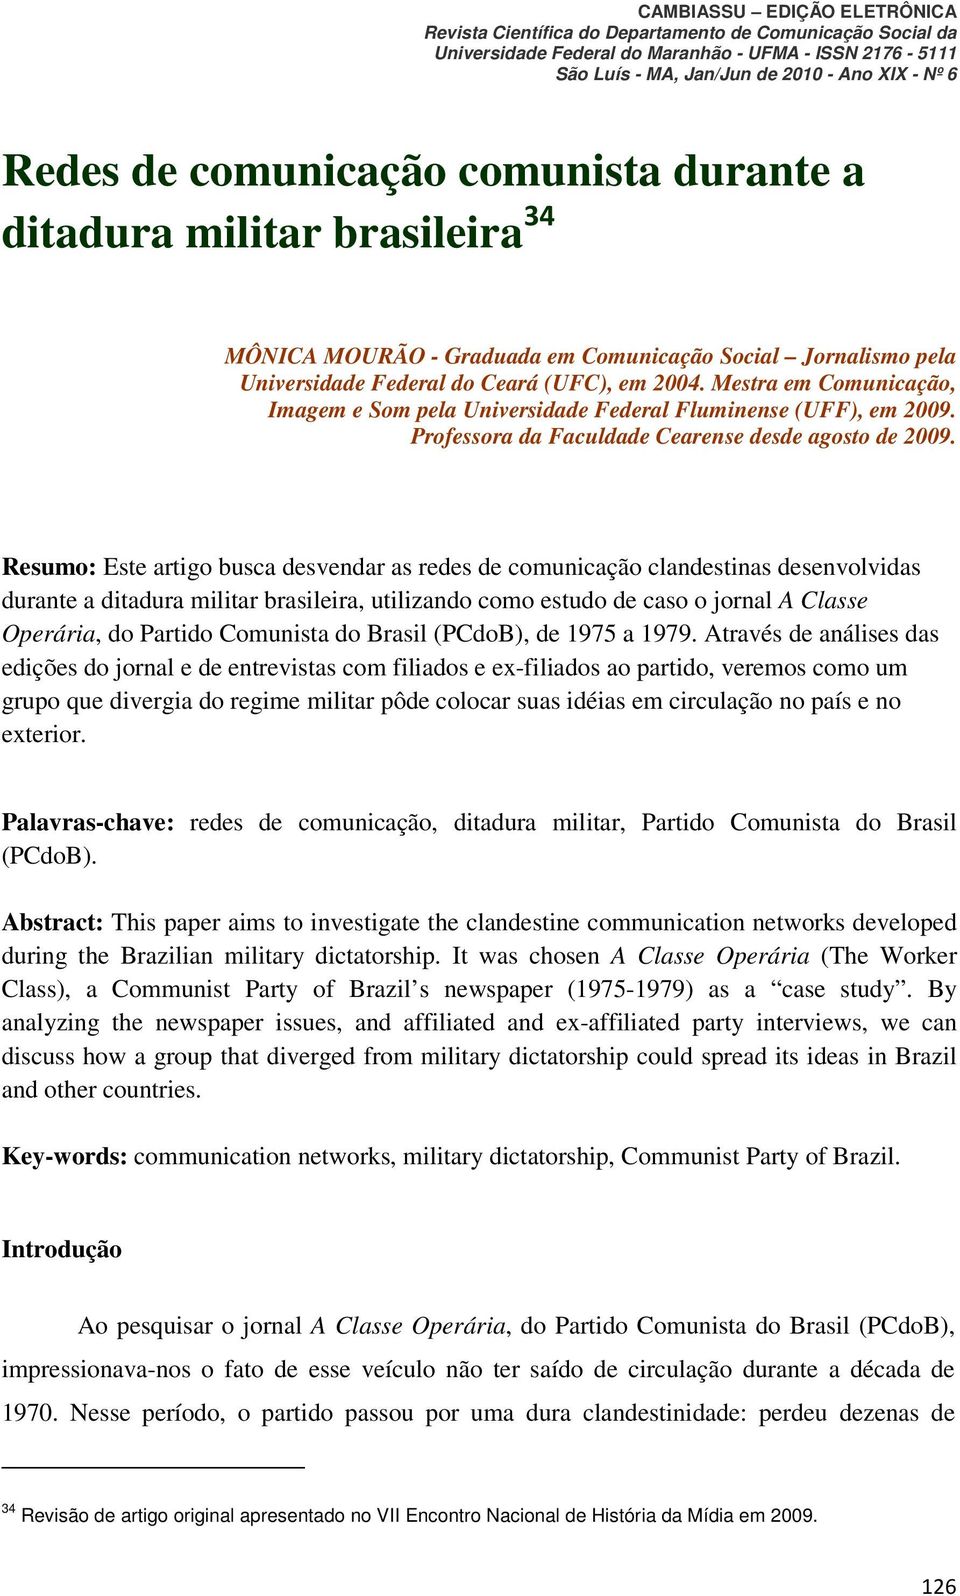 Resumo: Este artigo busca desvendar as redes de comunicação clandestinas desenvolvidas durante a ditadura militar brasileira, utilizando como estudo de caso o jornal A Classe Operária, do Partido